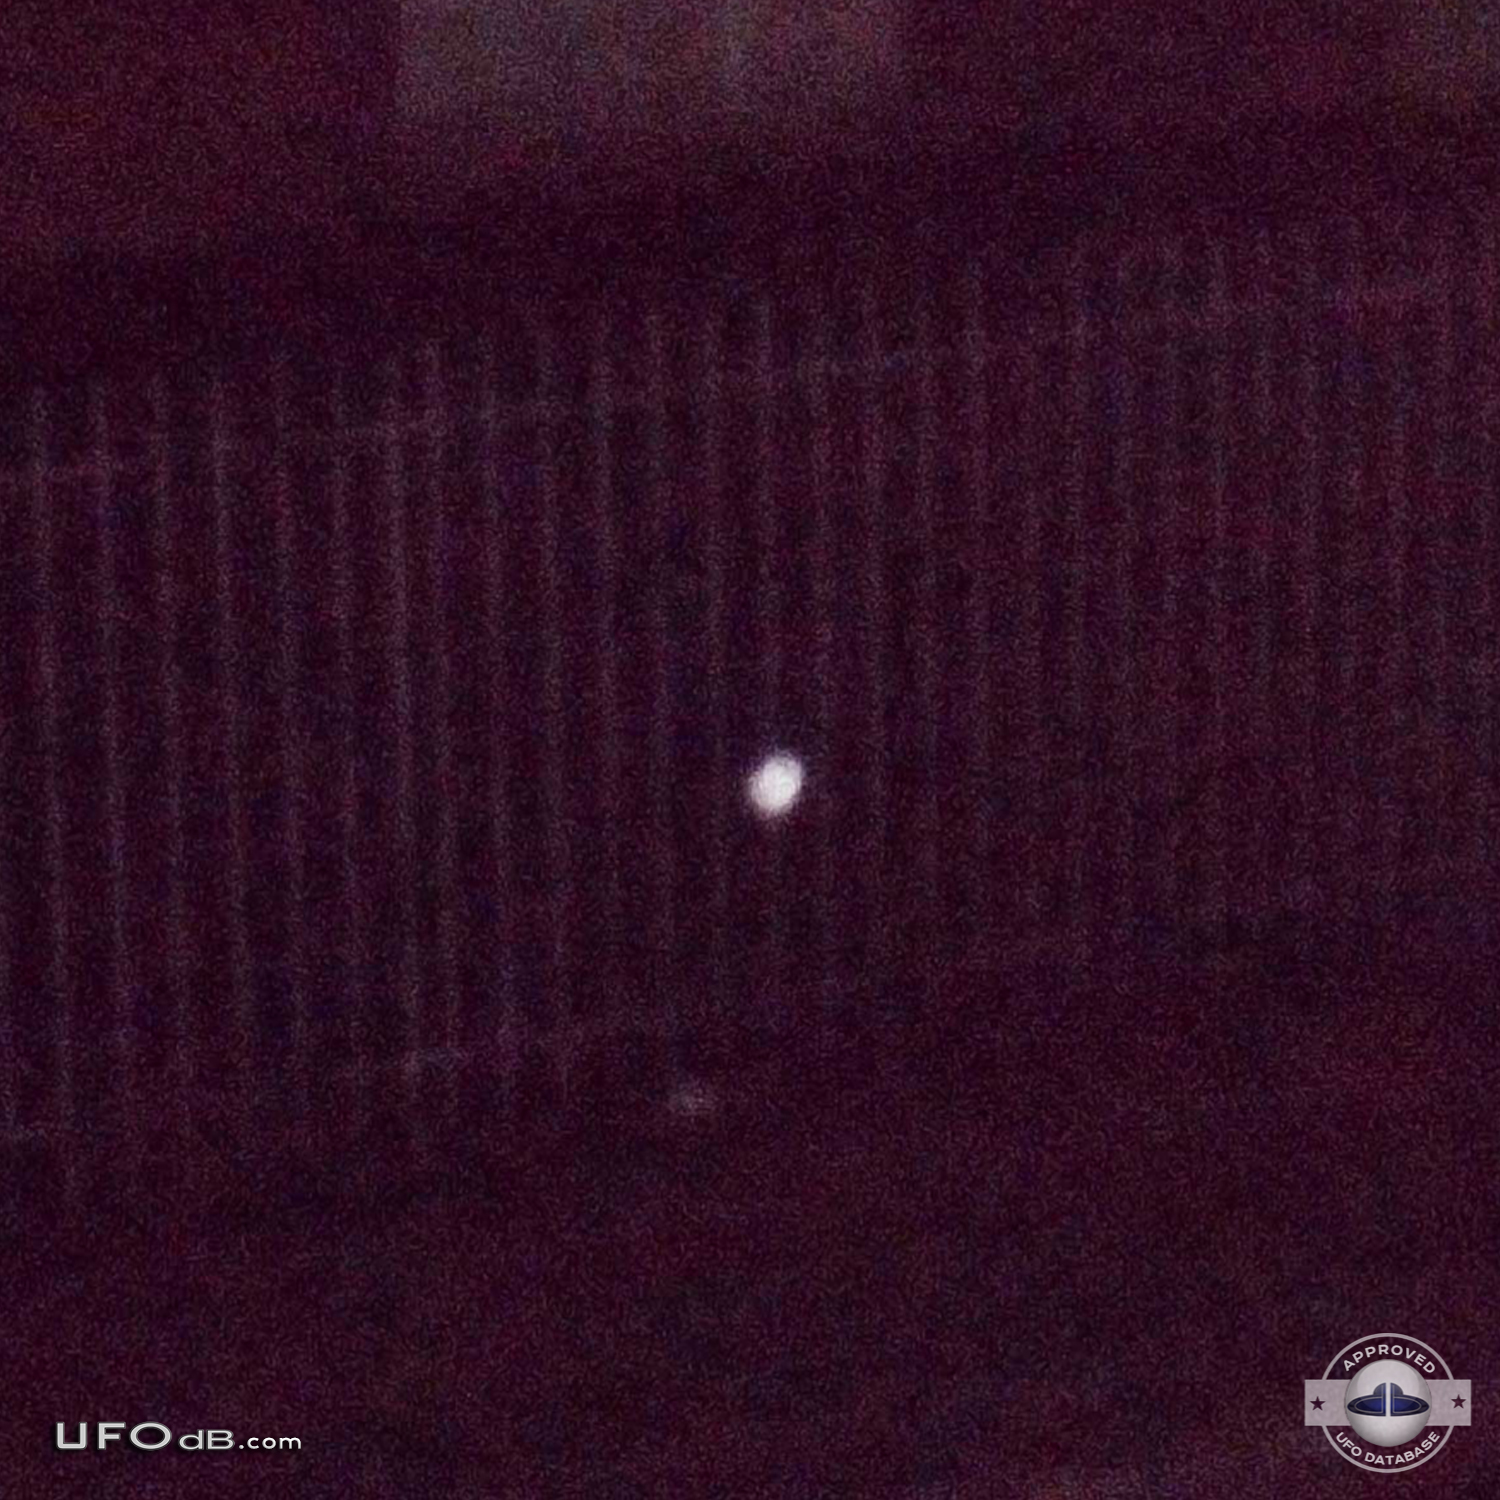 Picture of a Small white probe UFO caught in the backyard Bogota 2012 UFO Picture #400-2